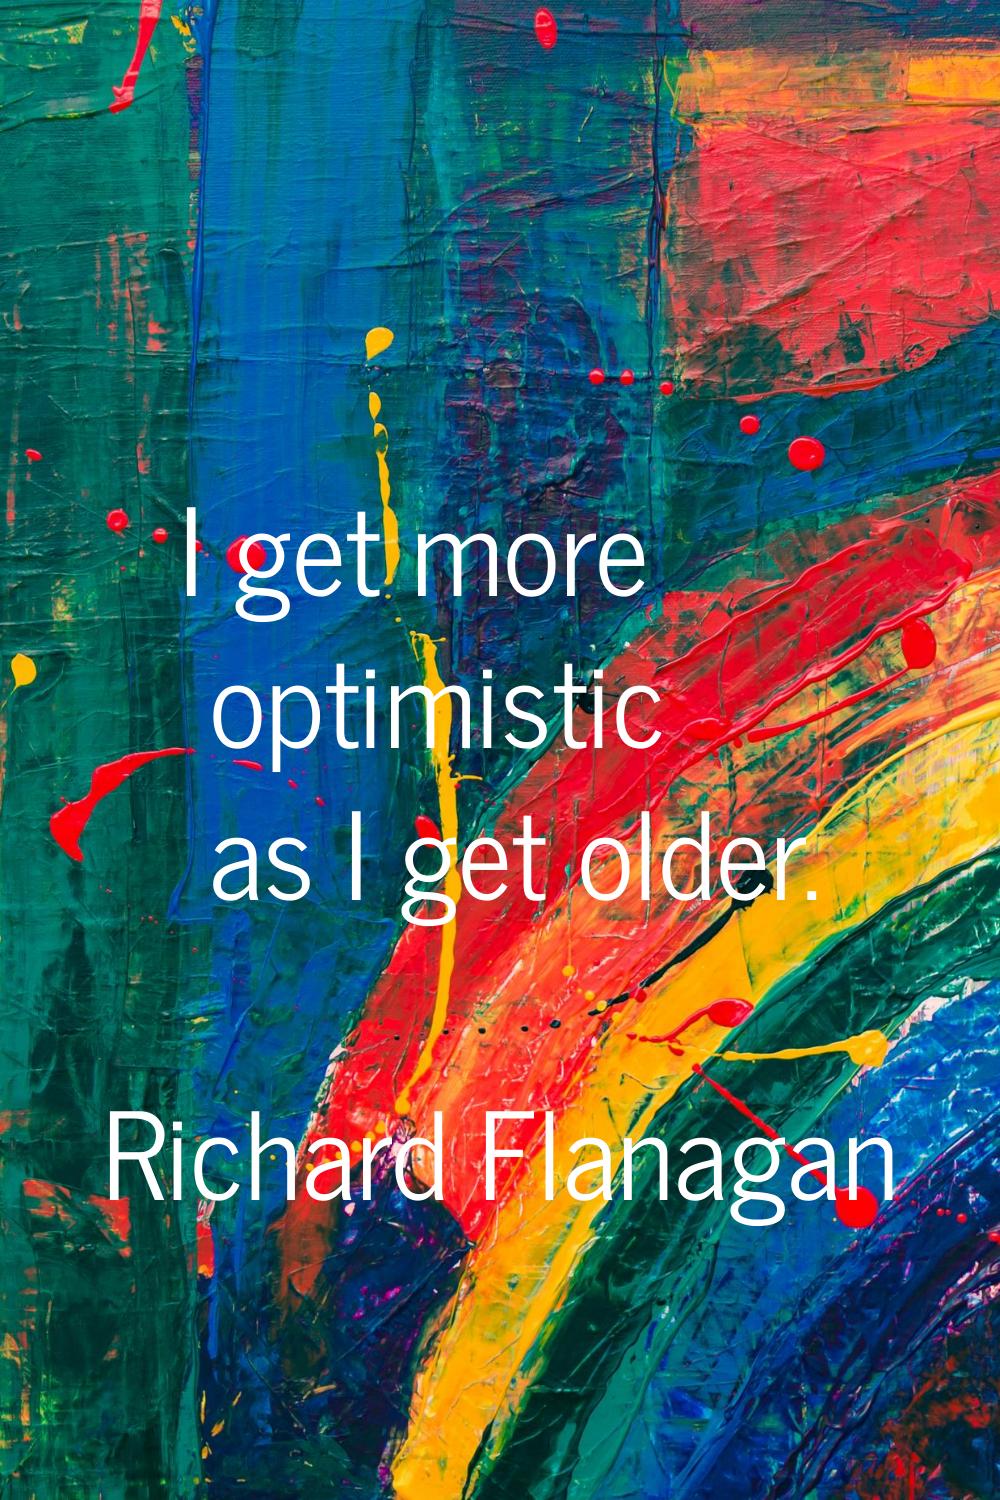 I get more optimistic as I get older.